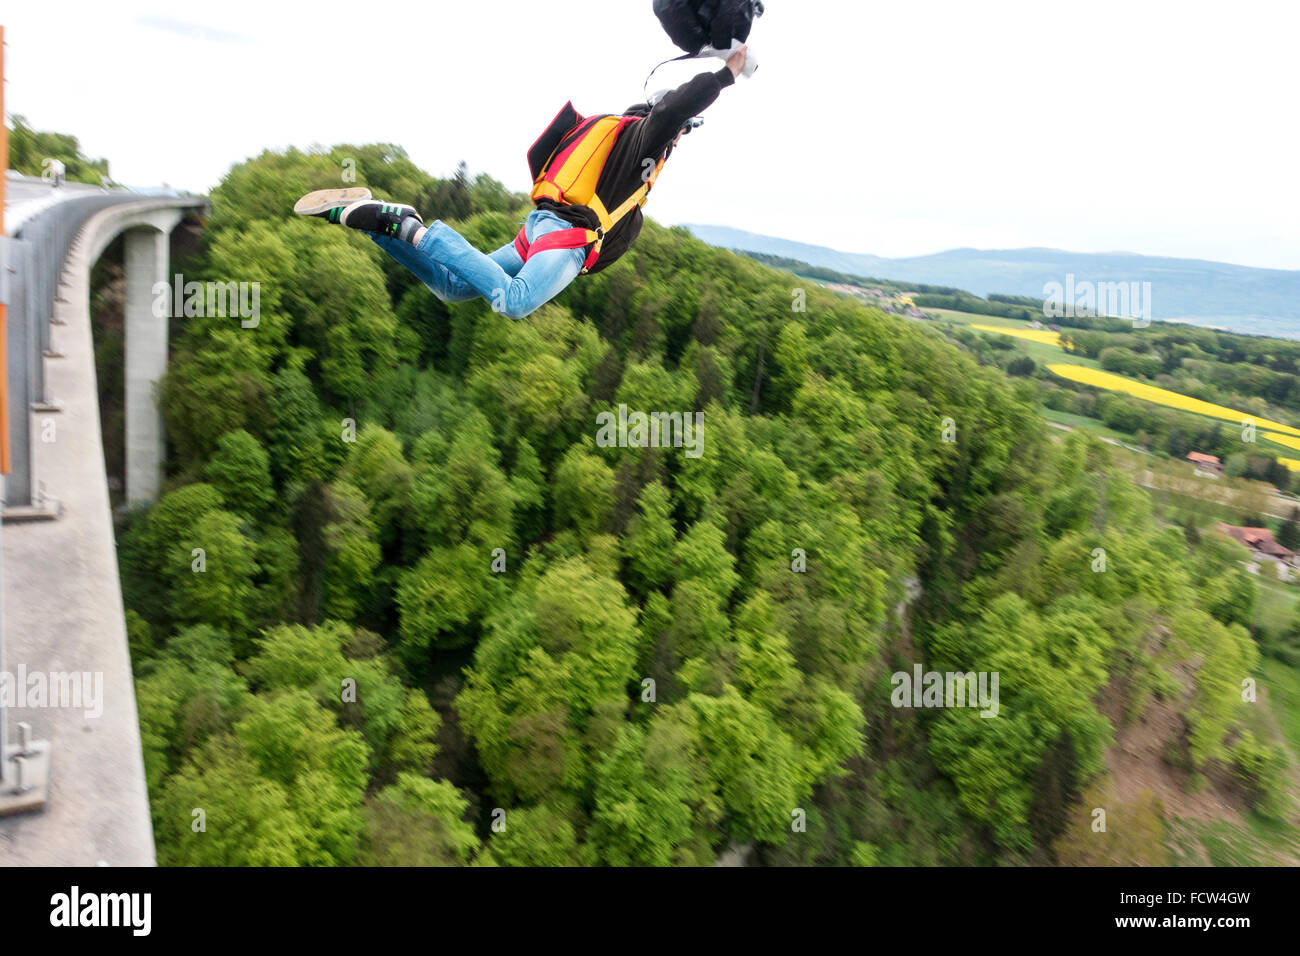 L'homme est sortie d'un pont avec son équipement de base jumping. Avec le pilote-chute dans sa main qu'il force le processus d'ouverture. Banque D'Images